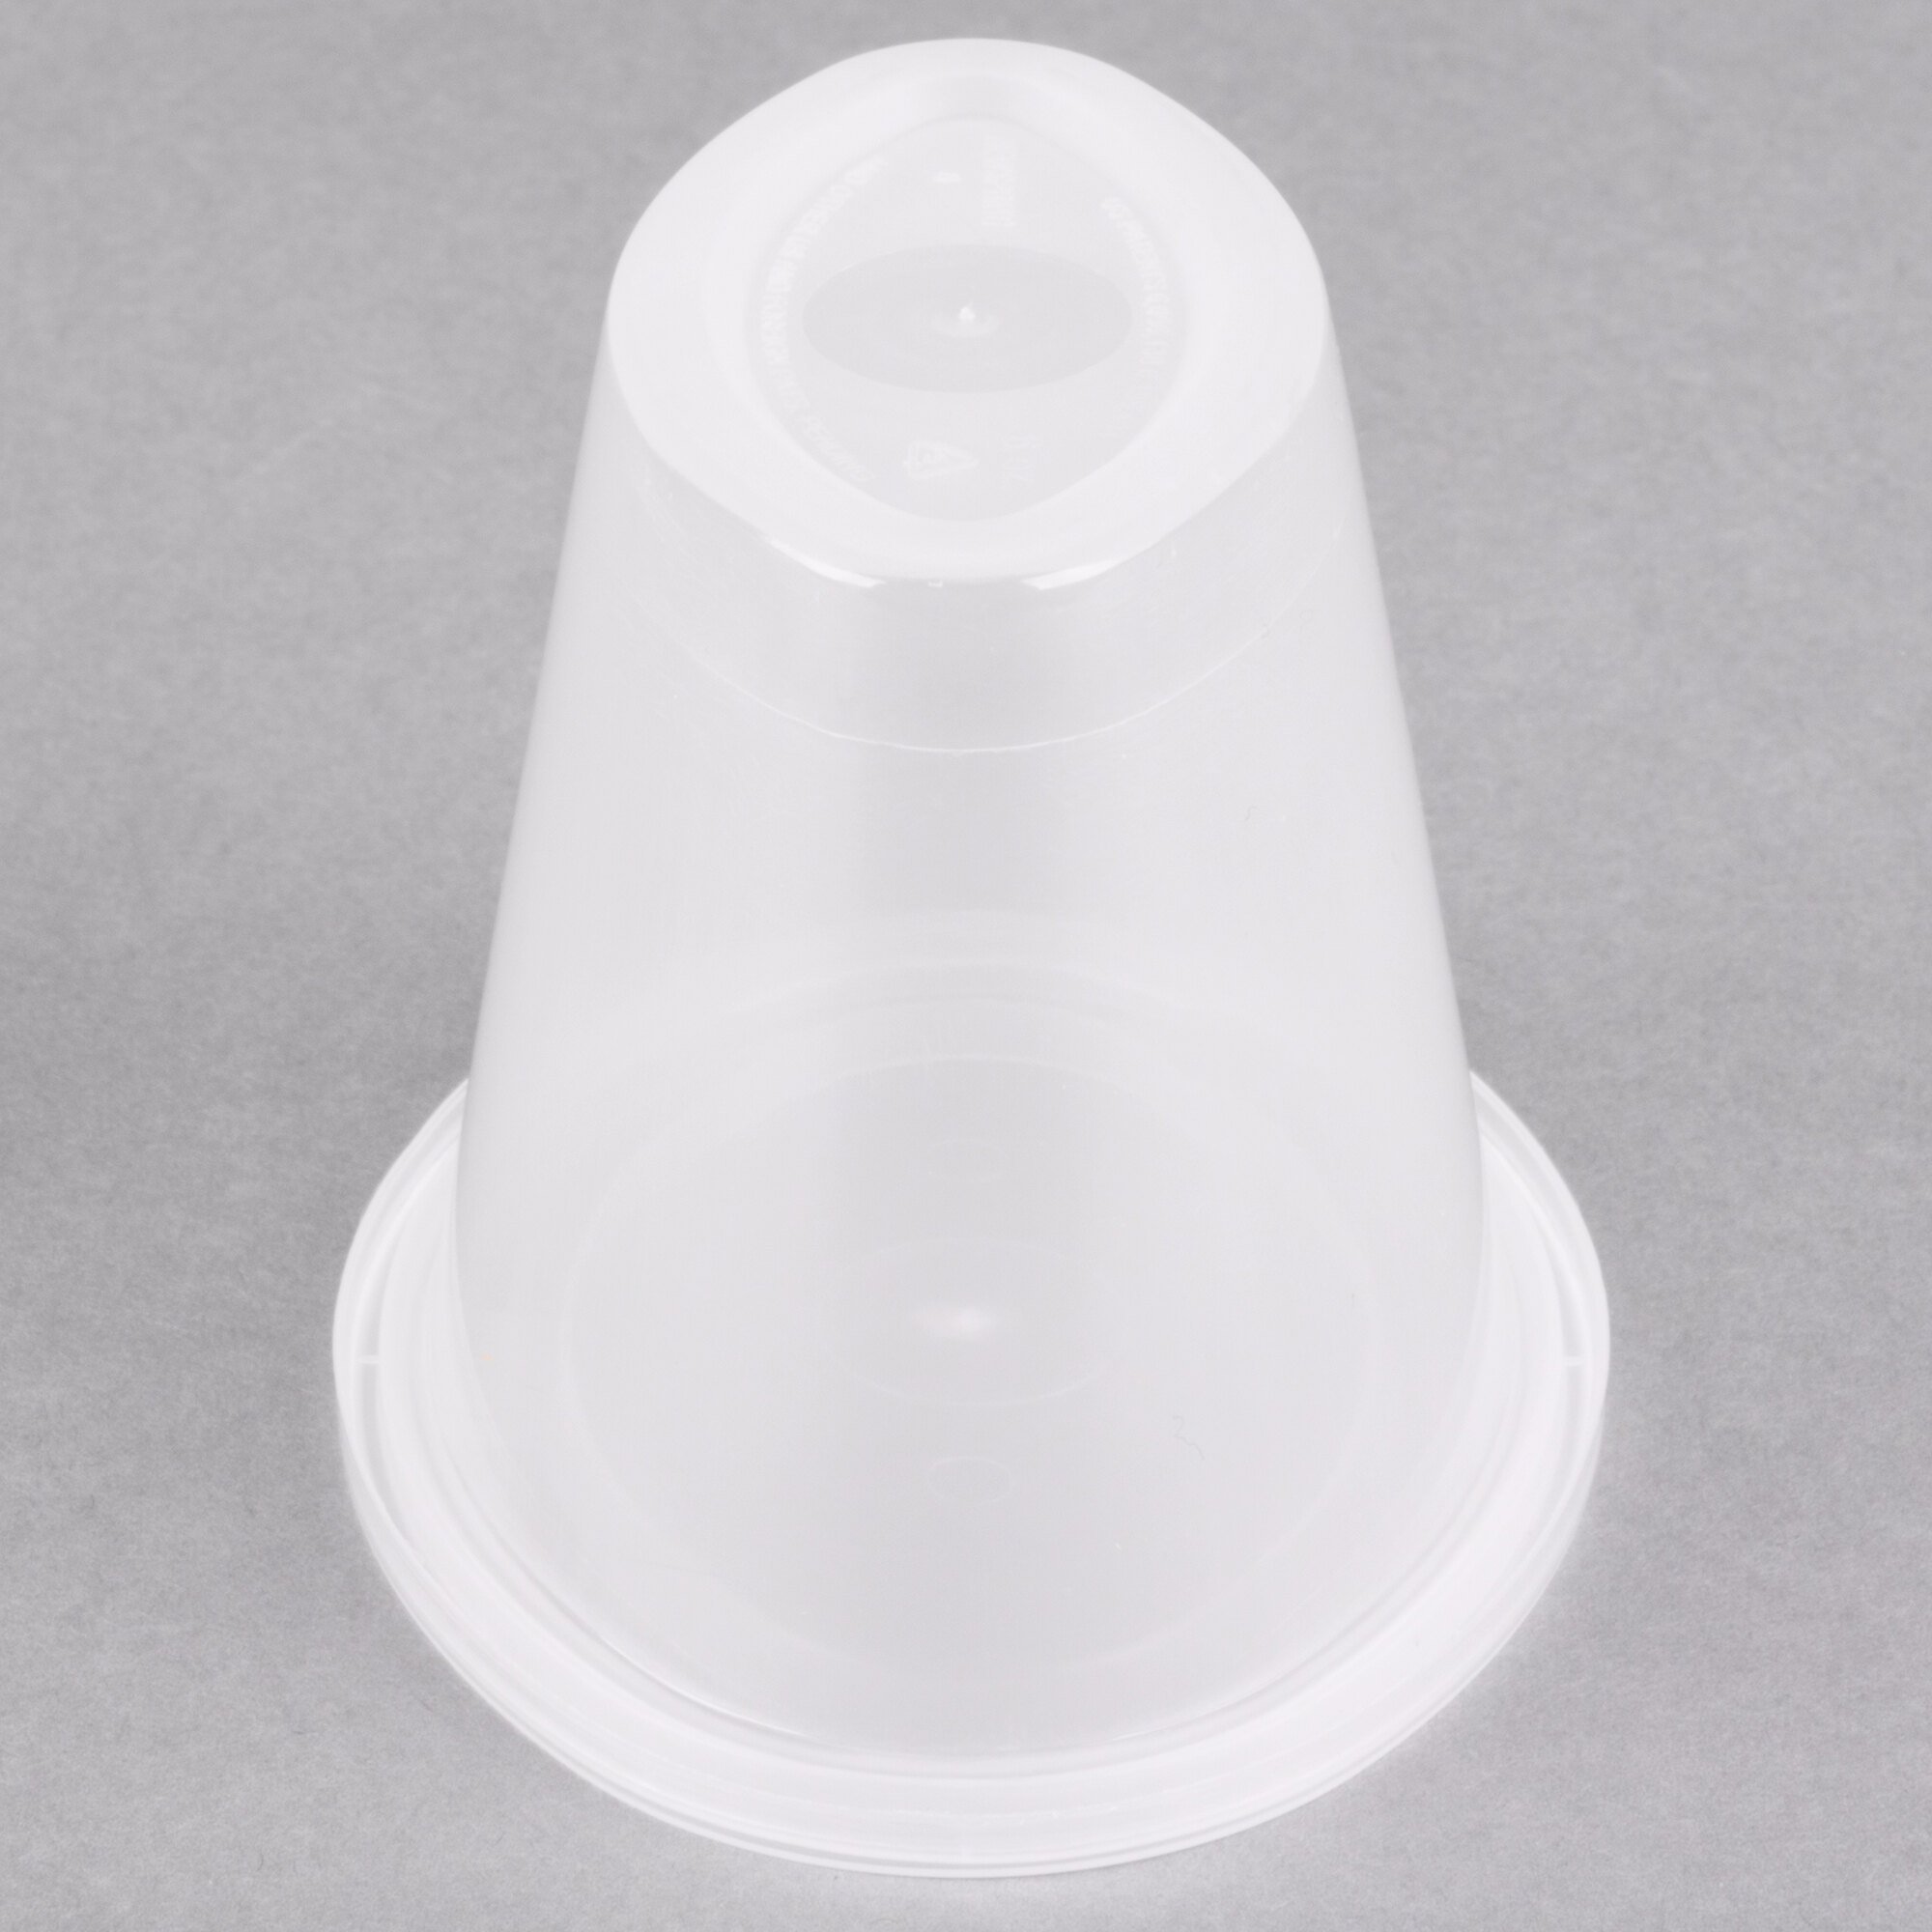 6 oz. Plastic Cups With Lids 500/Case WebstaurantStore